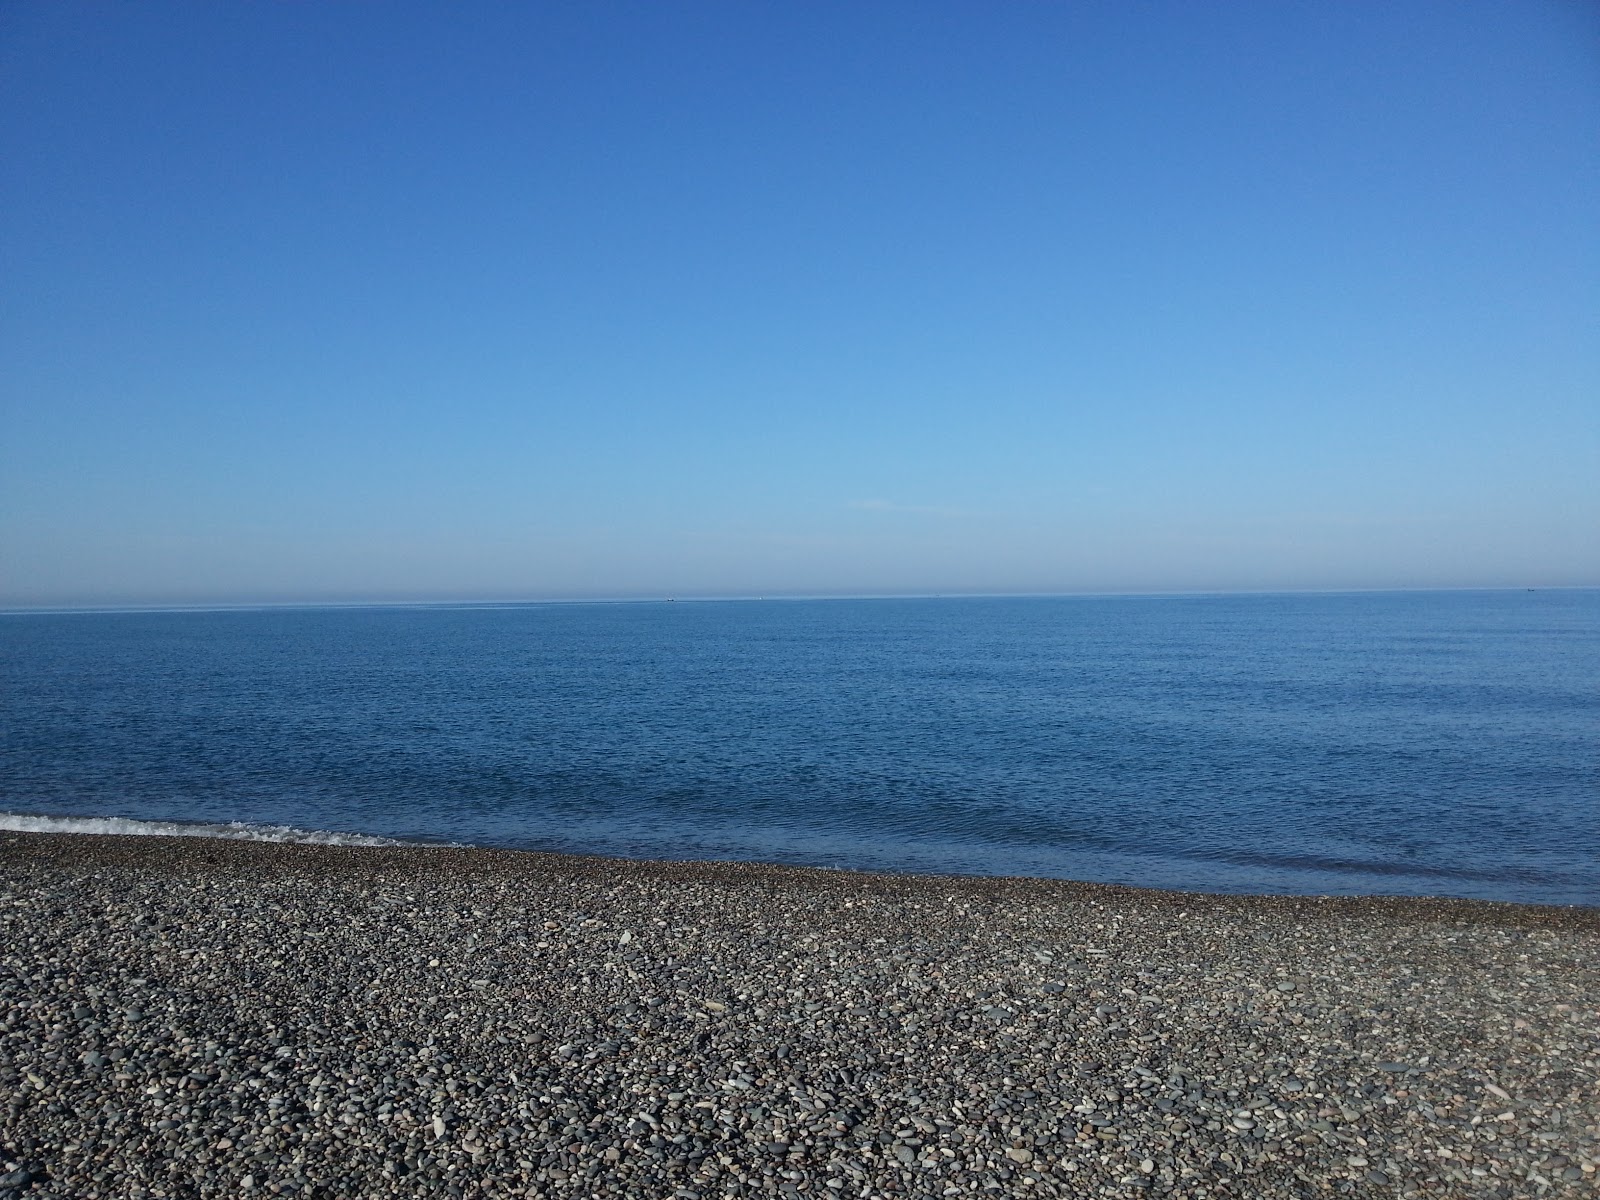 Zdjęcie Kobuleti beach IV z powierzchnią niebieska czysta woda